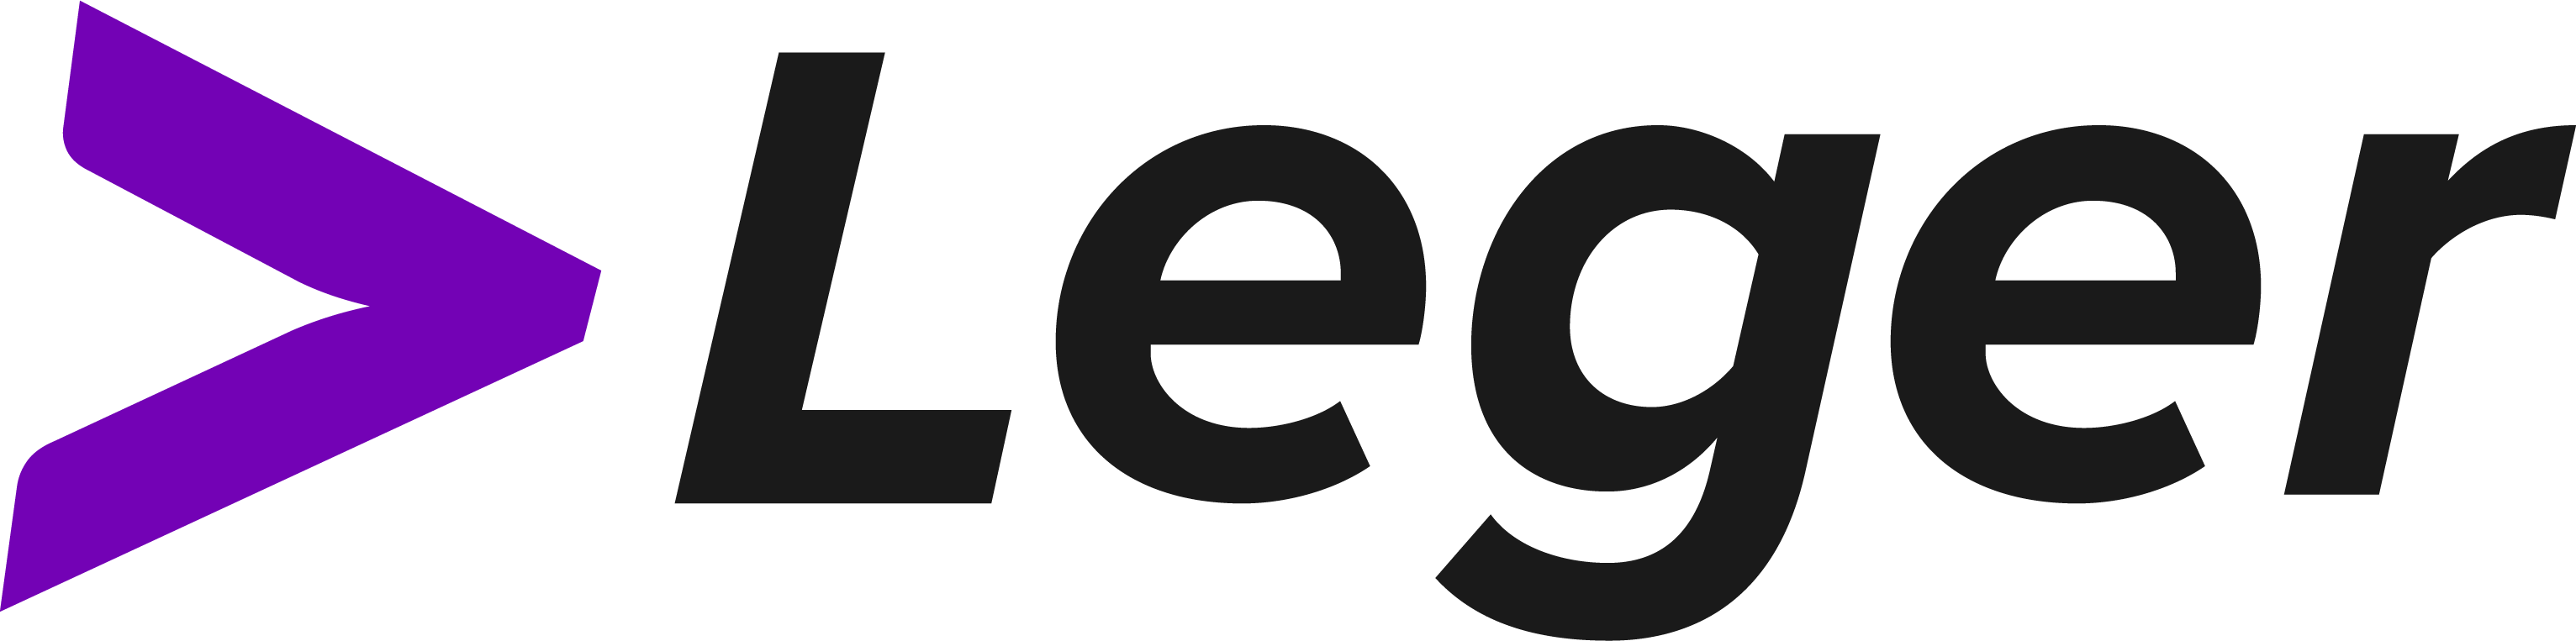 Leger GmbH Anlagen- und Prozesstechnik